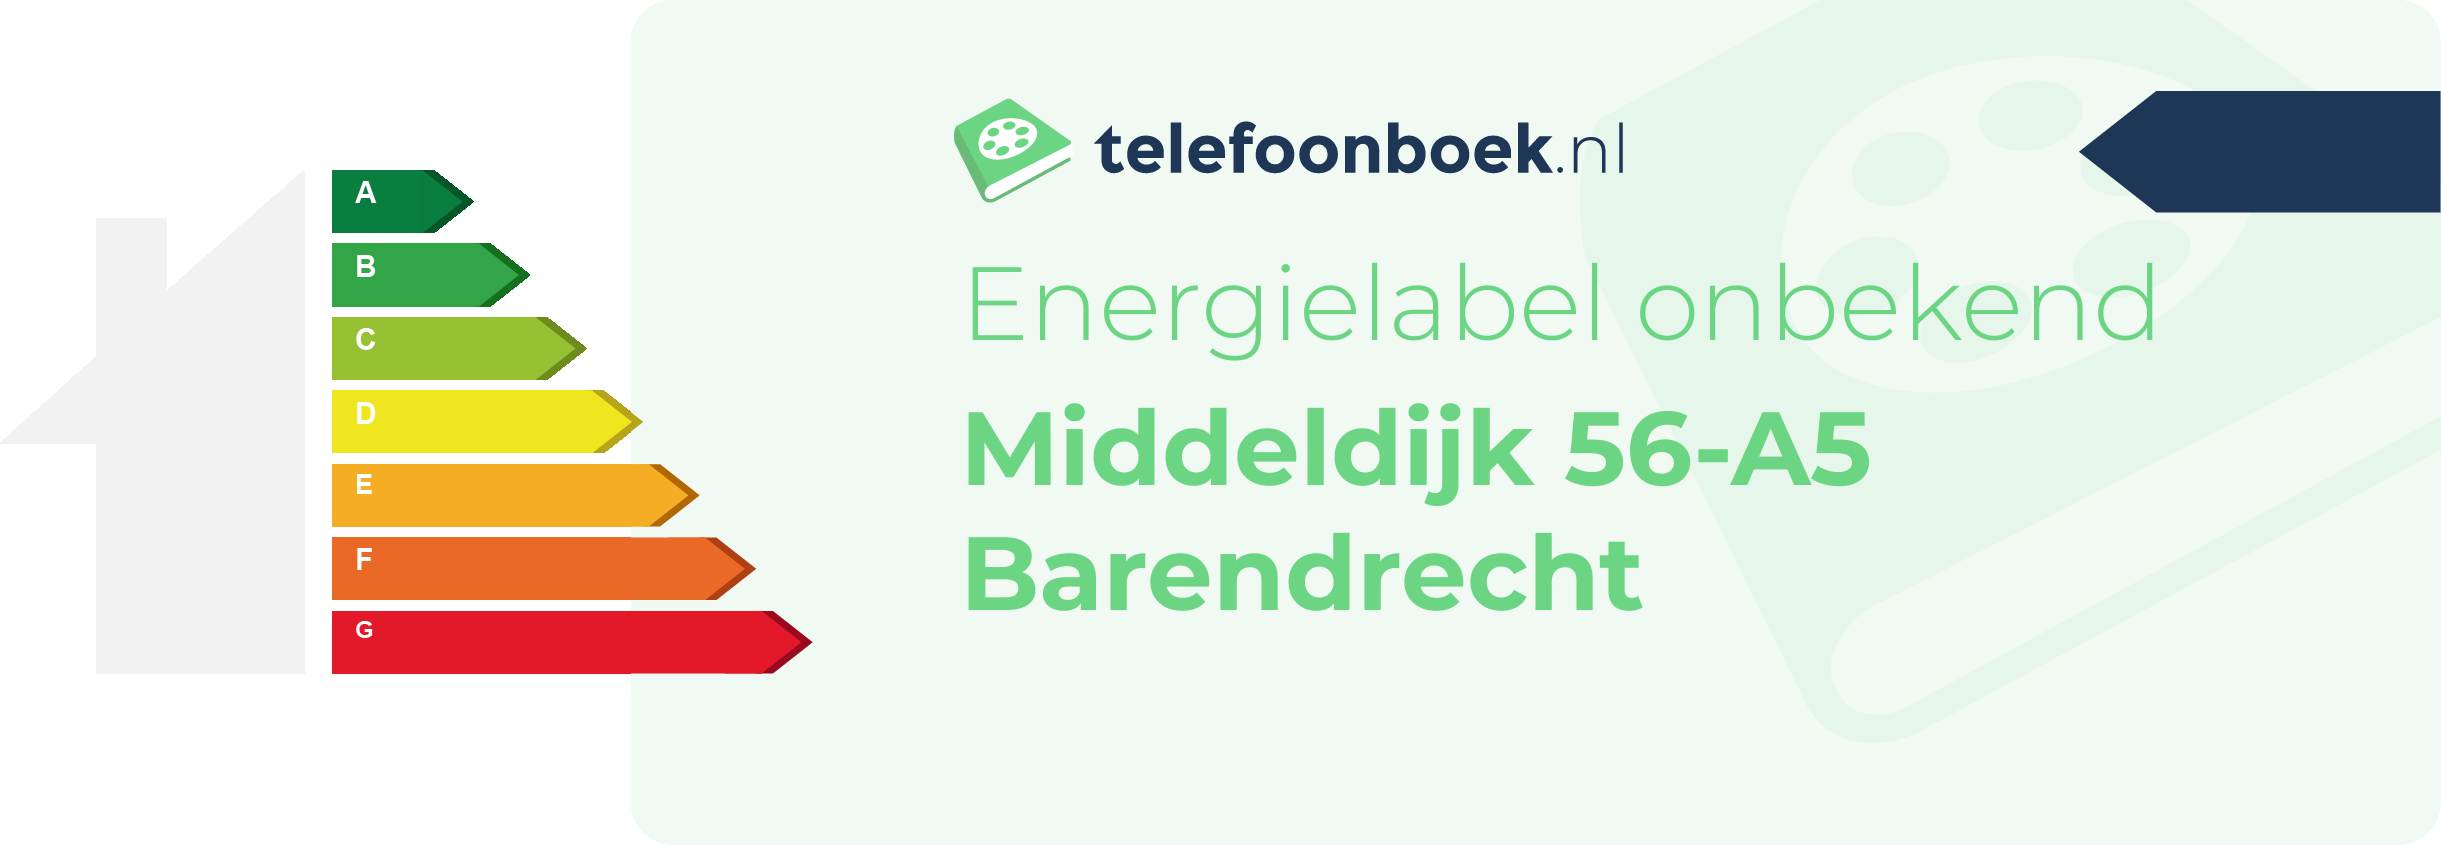 Energielabel Middeldijk 56-A5 Barendrecht